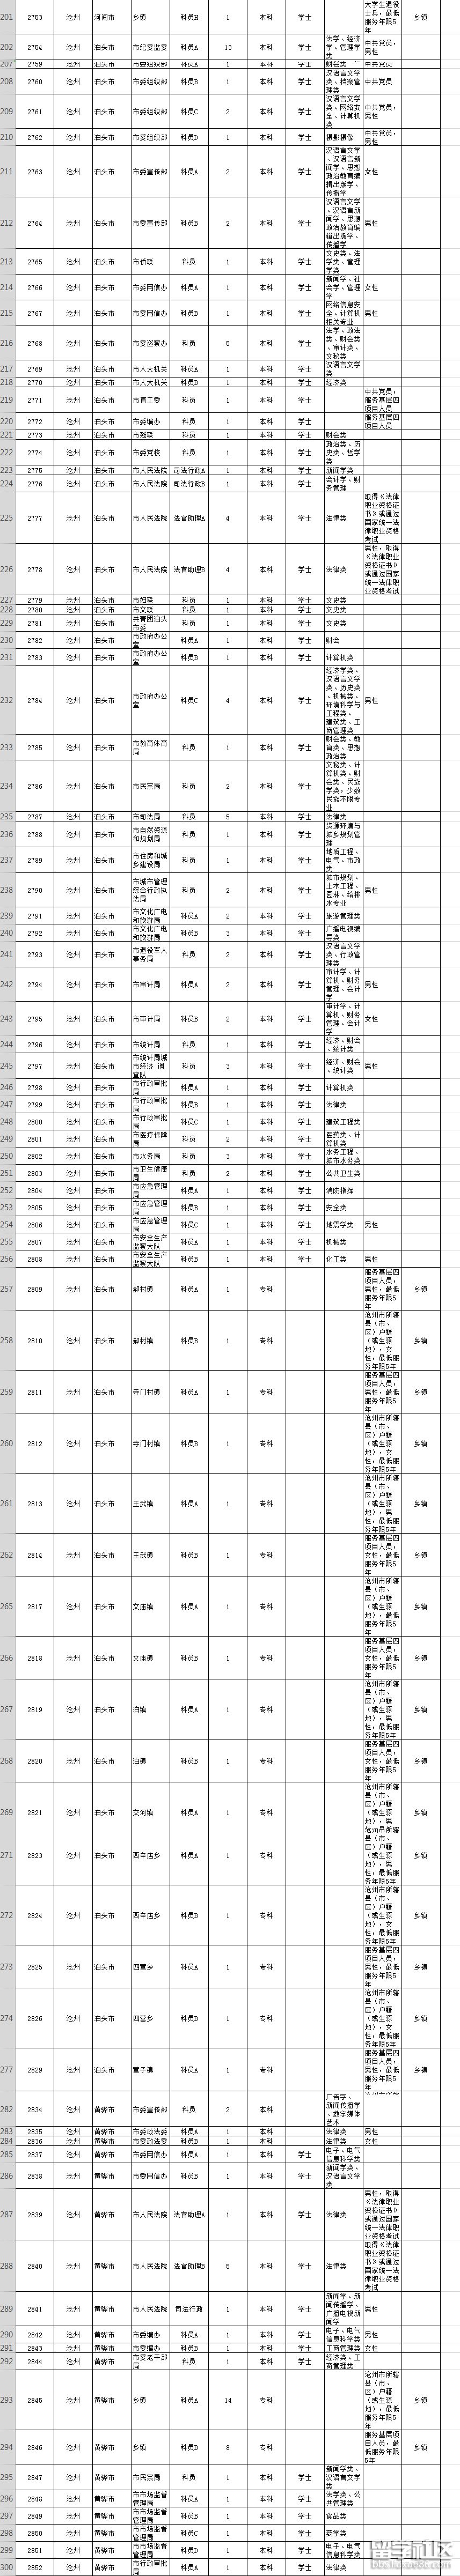 2019年河北省公务员考试职位表(沧州市)